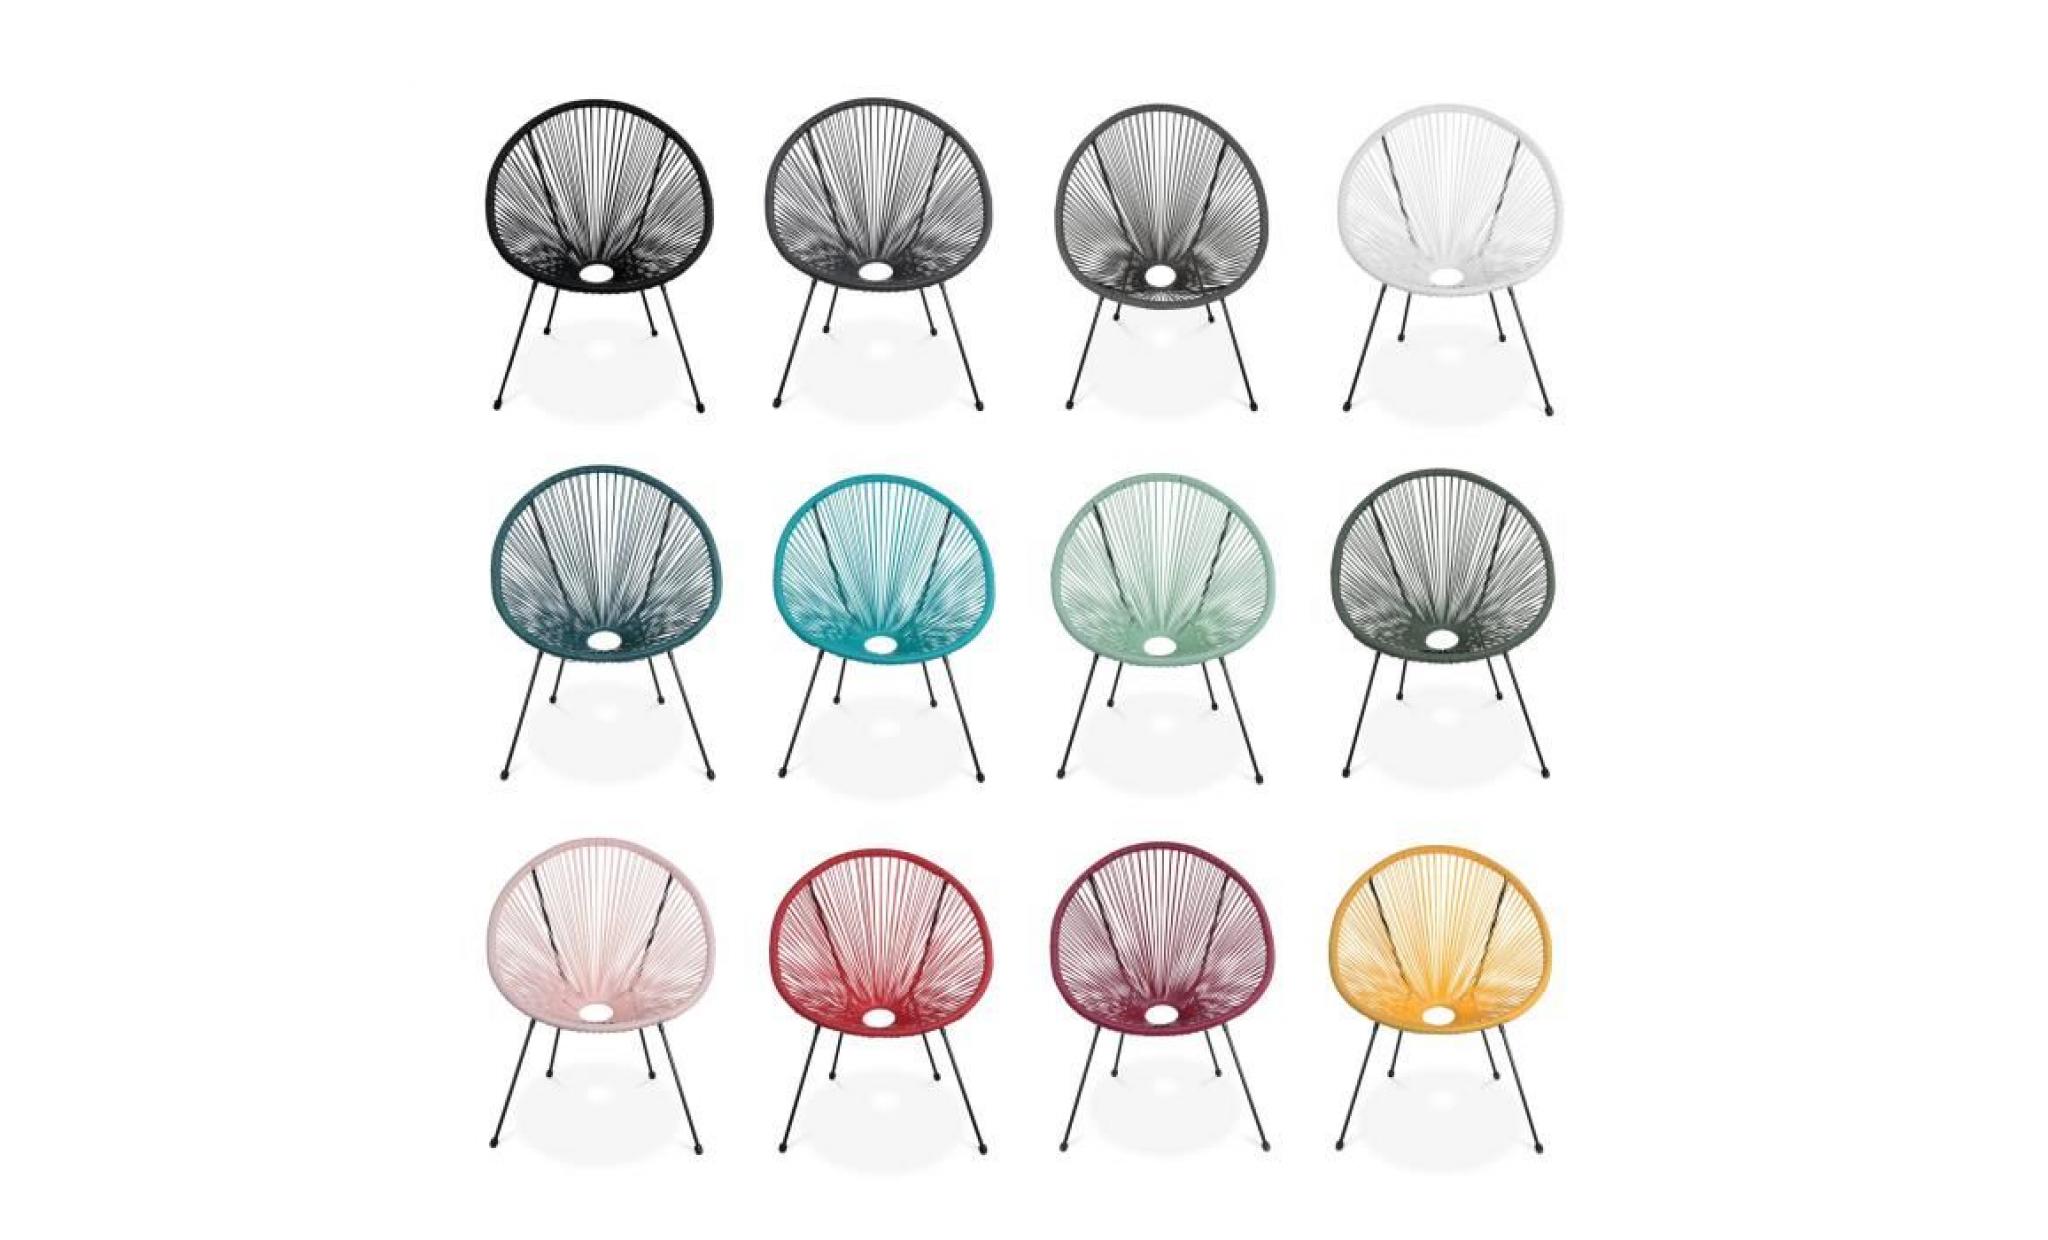 lot de 2 fauteuils design oeuf   acapulco gris foncé   fauteuils 4 pieds design rétro, cordage plastique, intérieur / extérieur pas cher